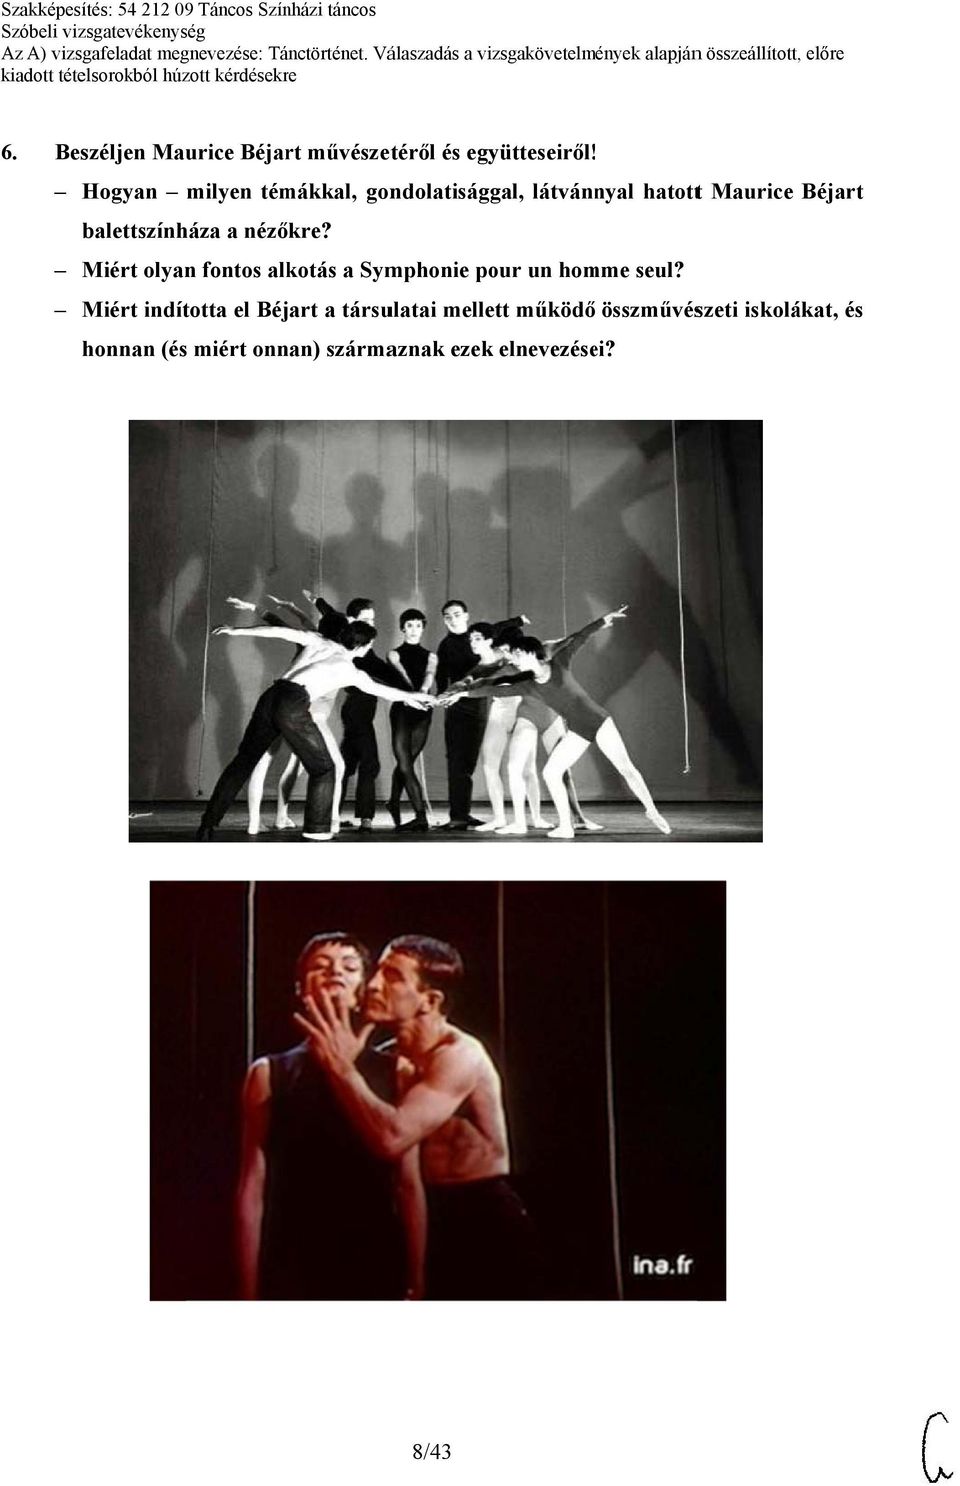 ! Hogyan milyen témákkal, gondolatisággal, látvánnyal hatottt Maurice Béjart balettszínháza a nézőkre?